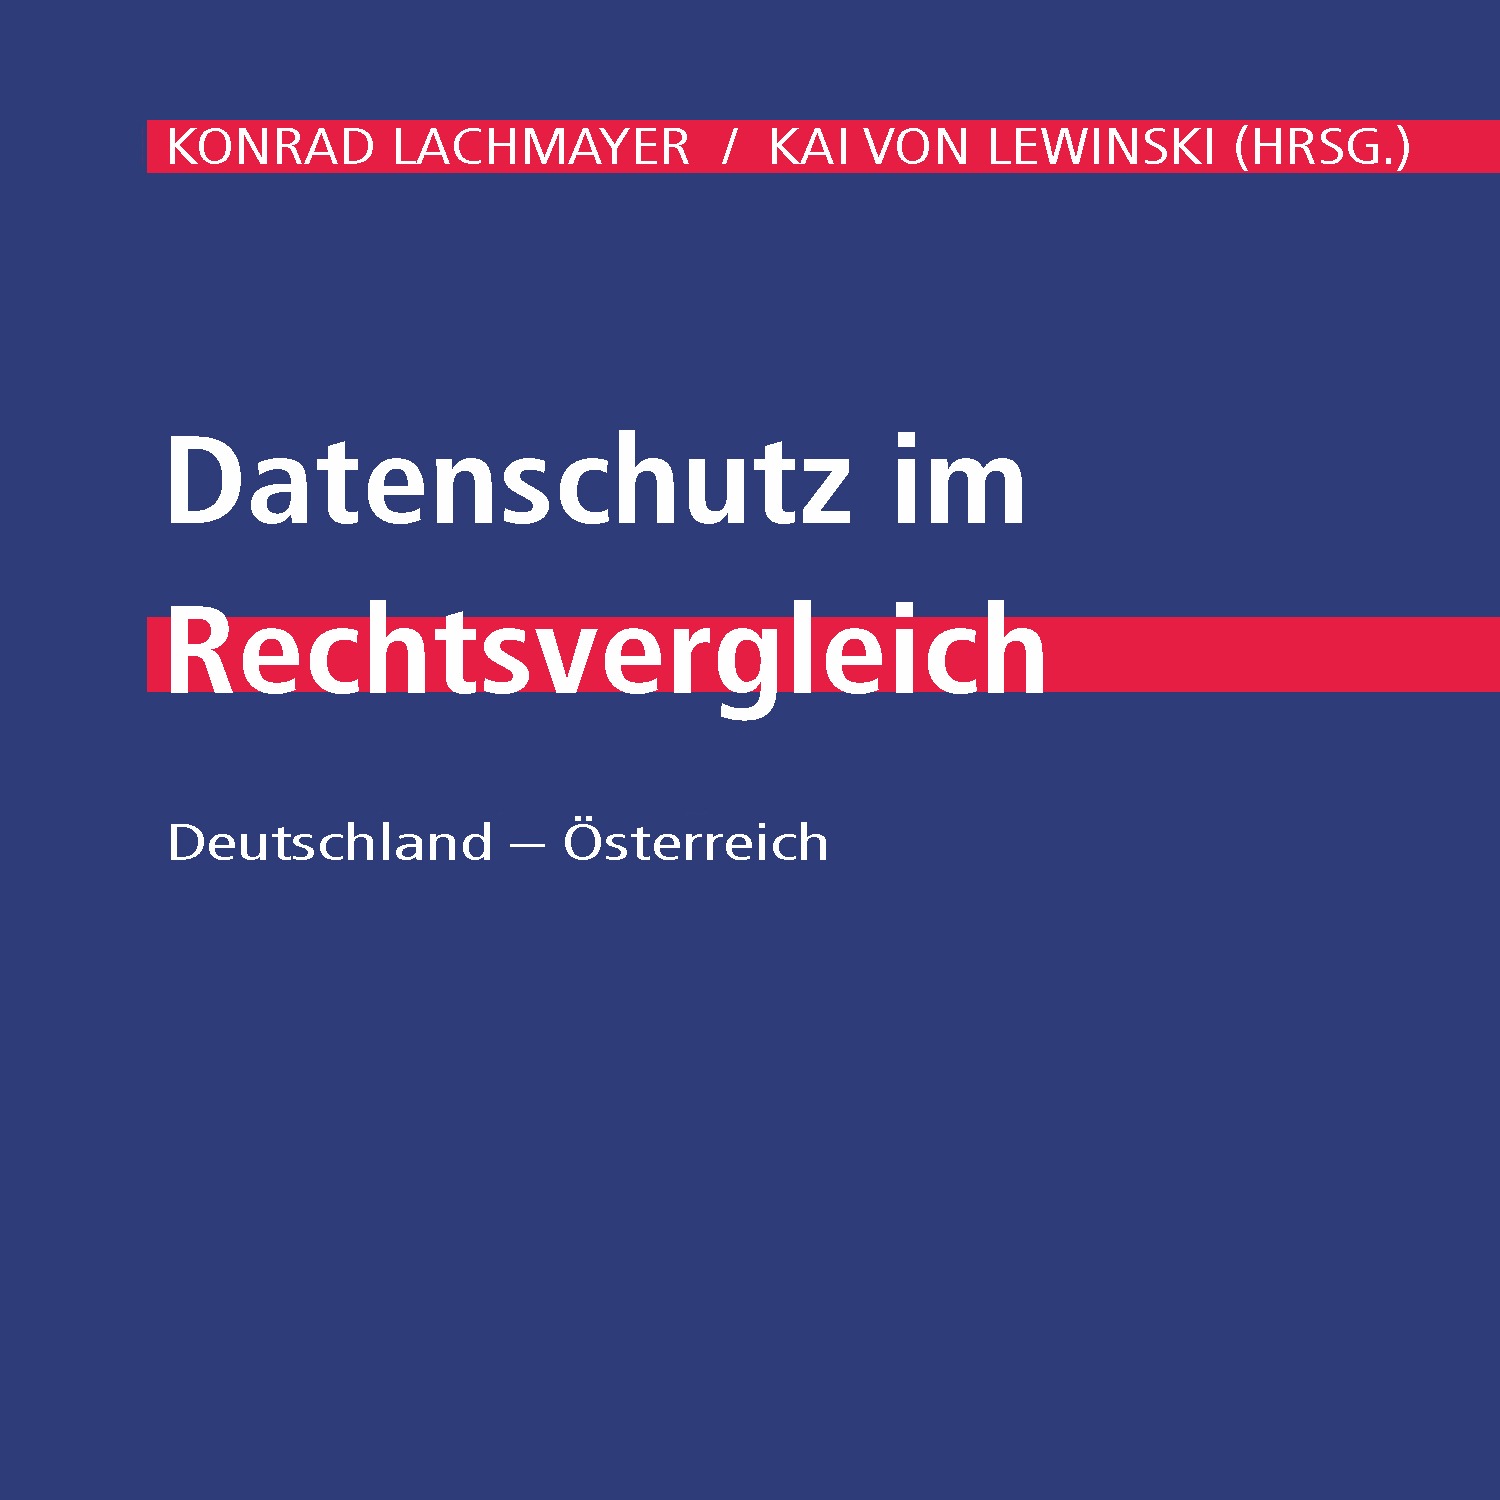 Just published – Datenschutz im Rechtsvergleich: Deutschland – Österreich